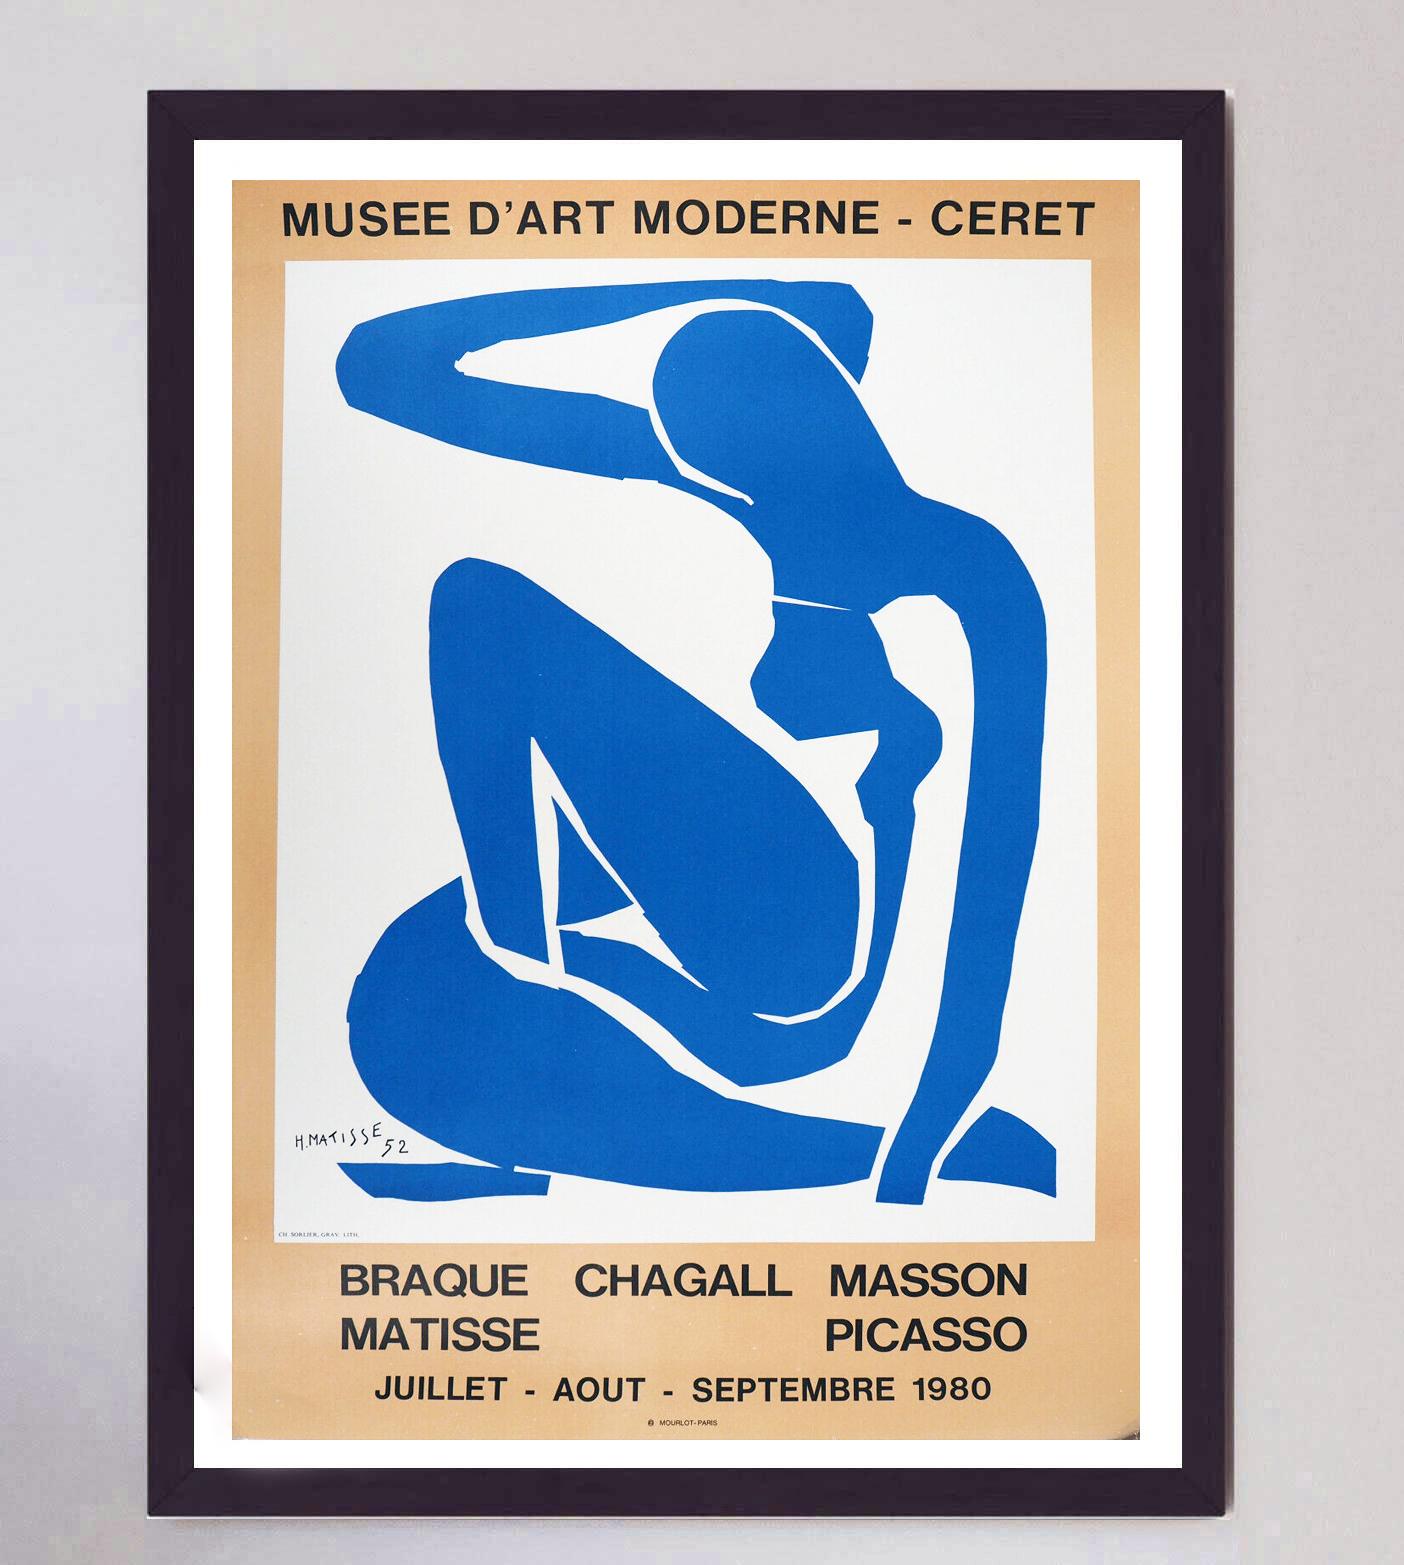 Représentant le Nud Bleu II de la série des découpages de la fin des années 1940, cette superbe affiche a été créée pour promouvoir une exposition présentant les œuvres du peintre Matisse ainsi que de Braque, Chagall, Masson et Picasso au Musée